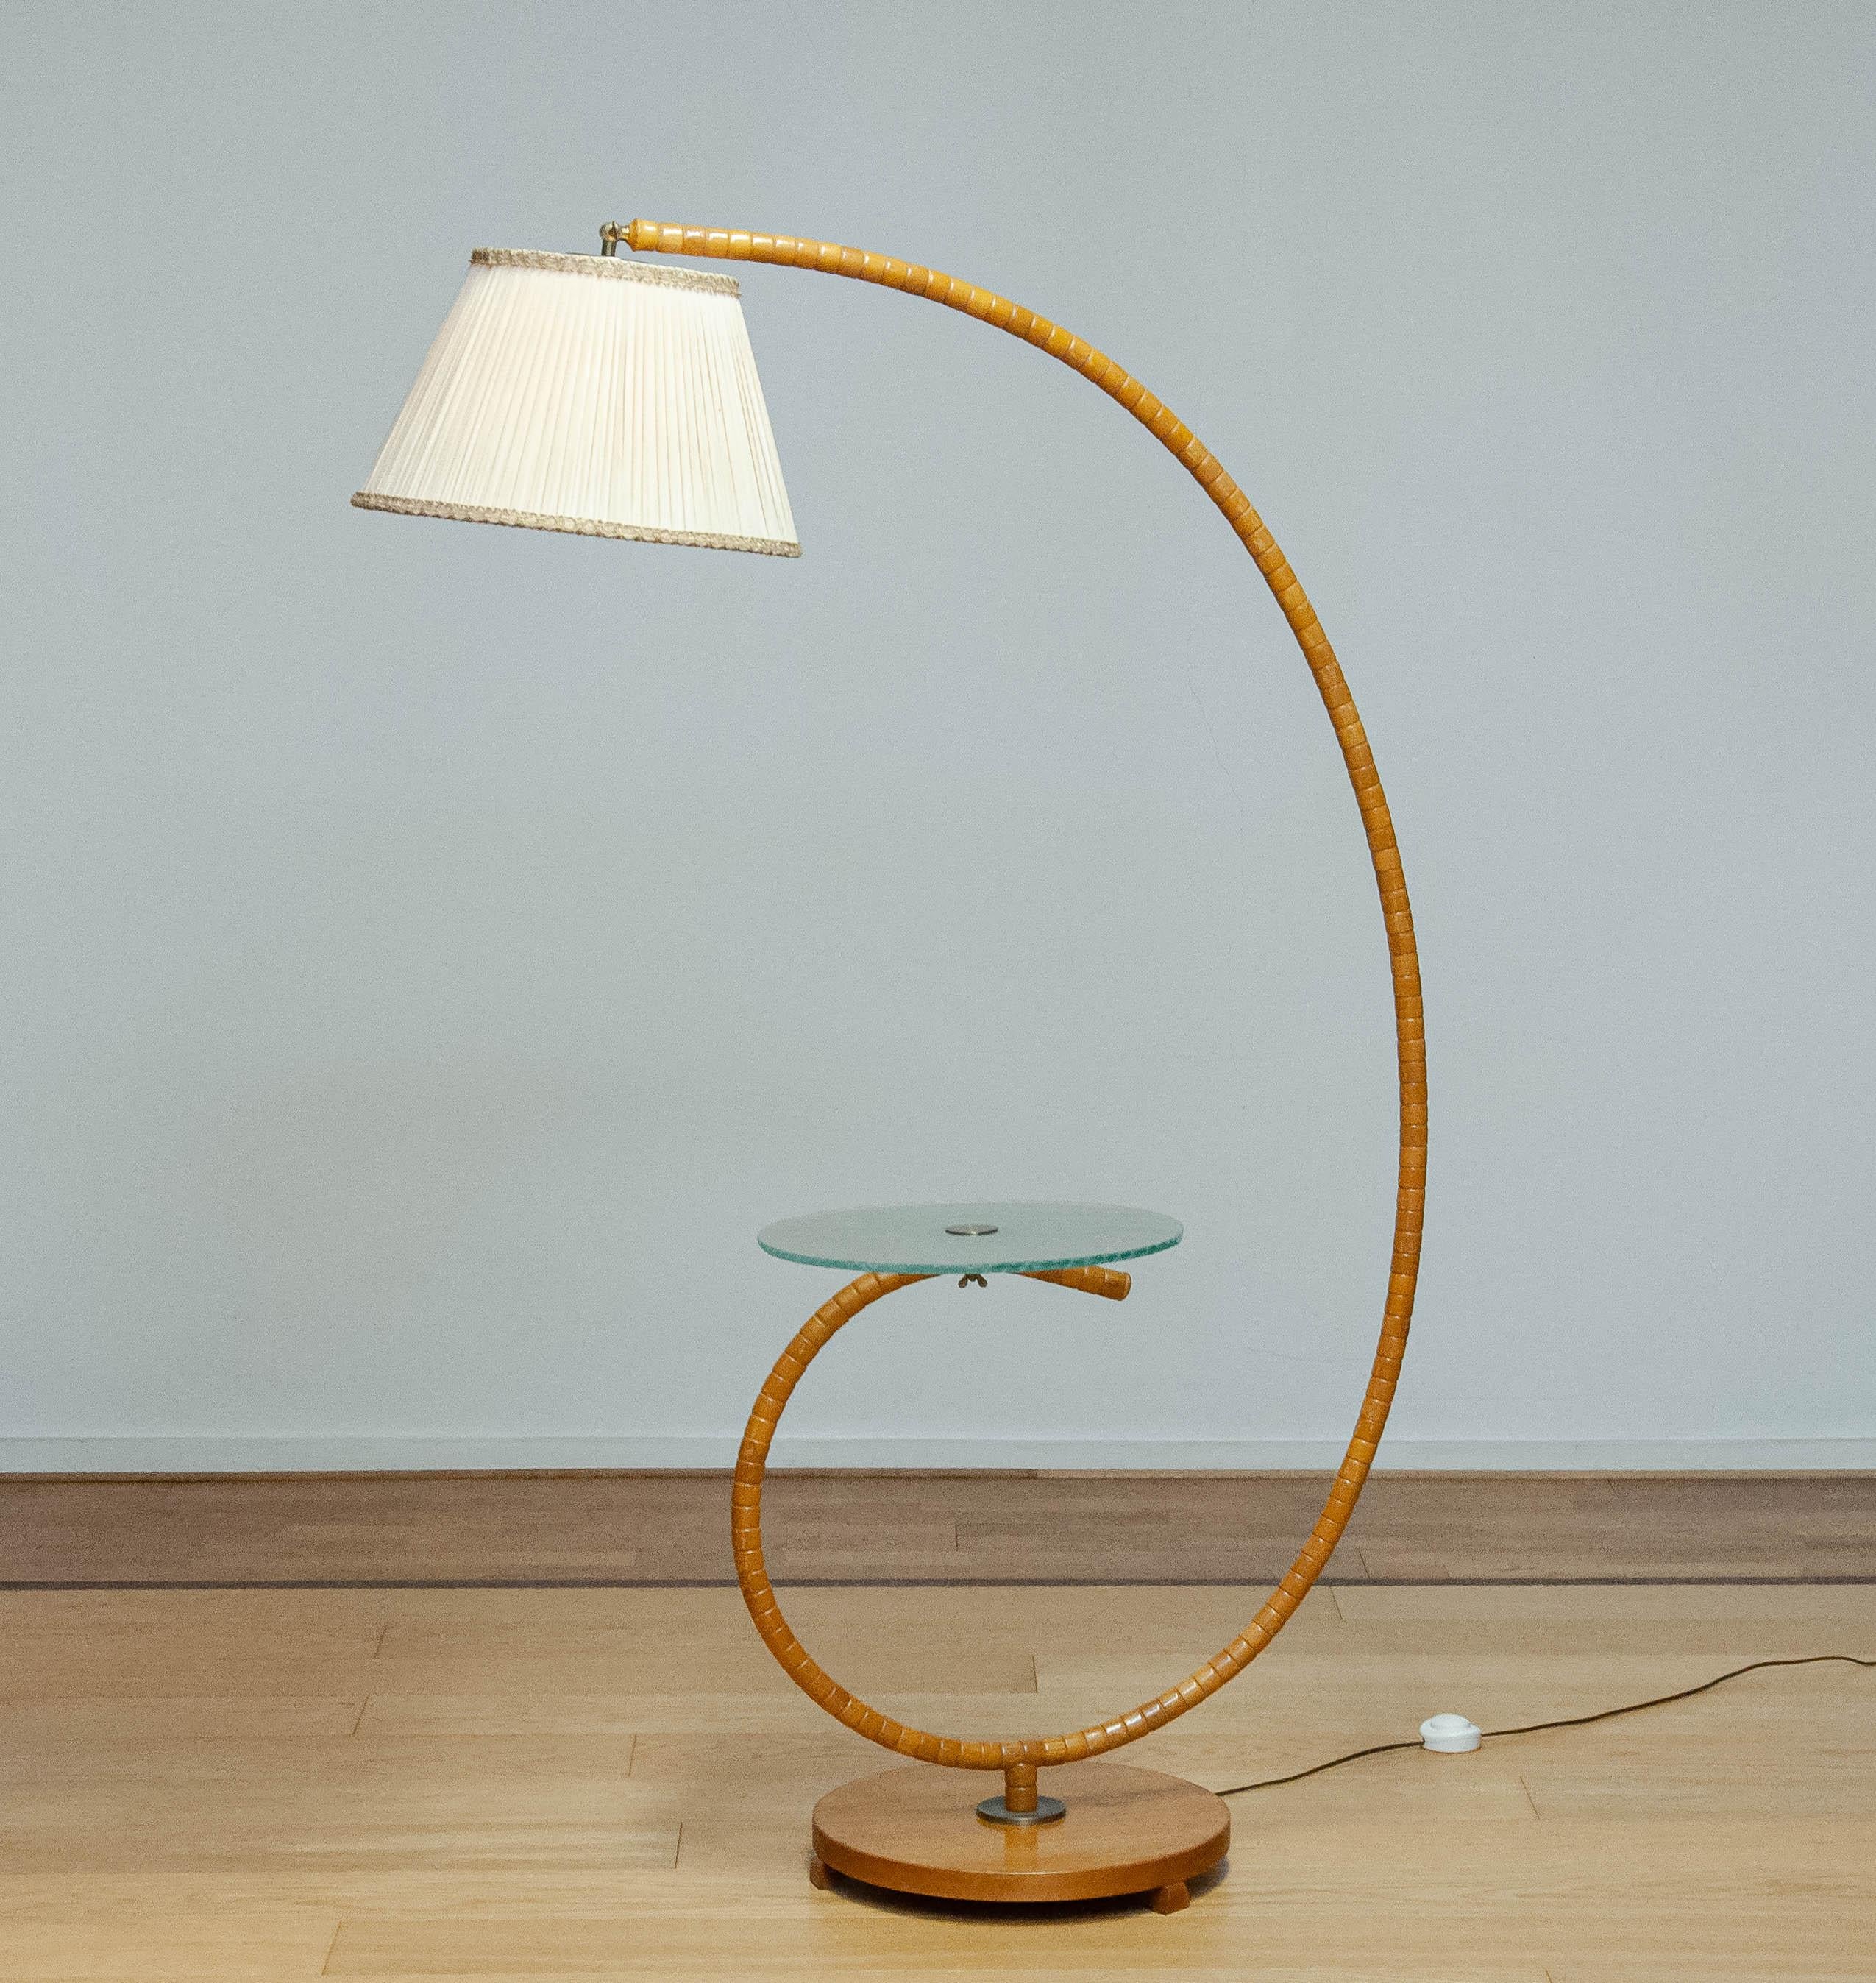 Absolut schöne und sehr seltene Jugendstil-Stehlampe, hergestellt in den 1940er Jahren in Schweden von IWO in Mariestad.
Die Lampe ist aus Ulmenholz gefertigt und mit einem Tisch aus Kunstglas kombiniert. Der Kunstglastisch 
oben hat Gravuren auf